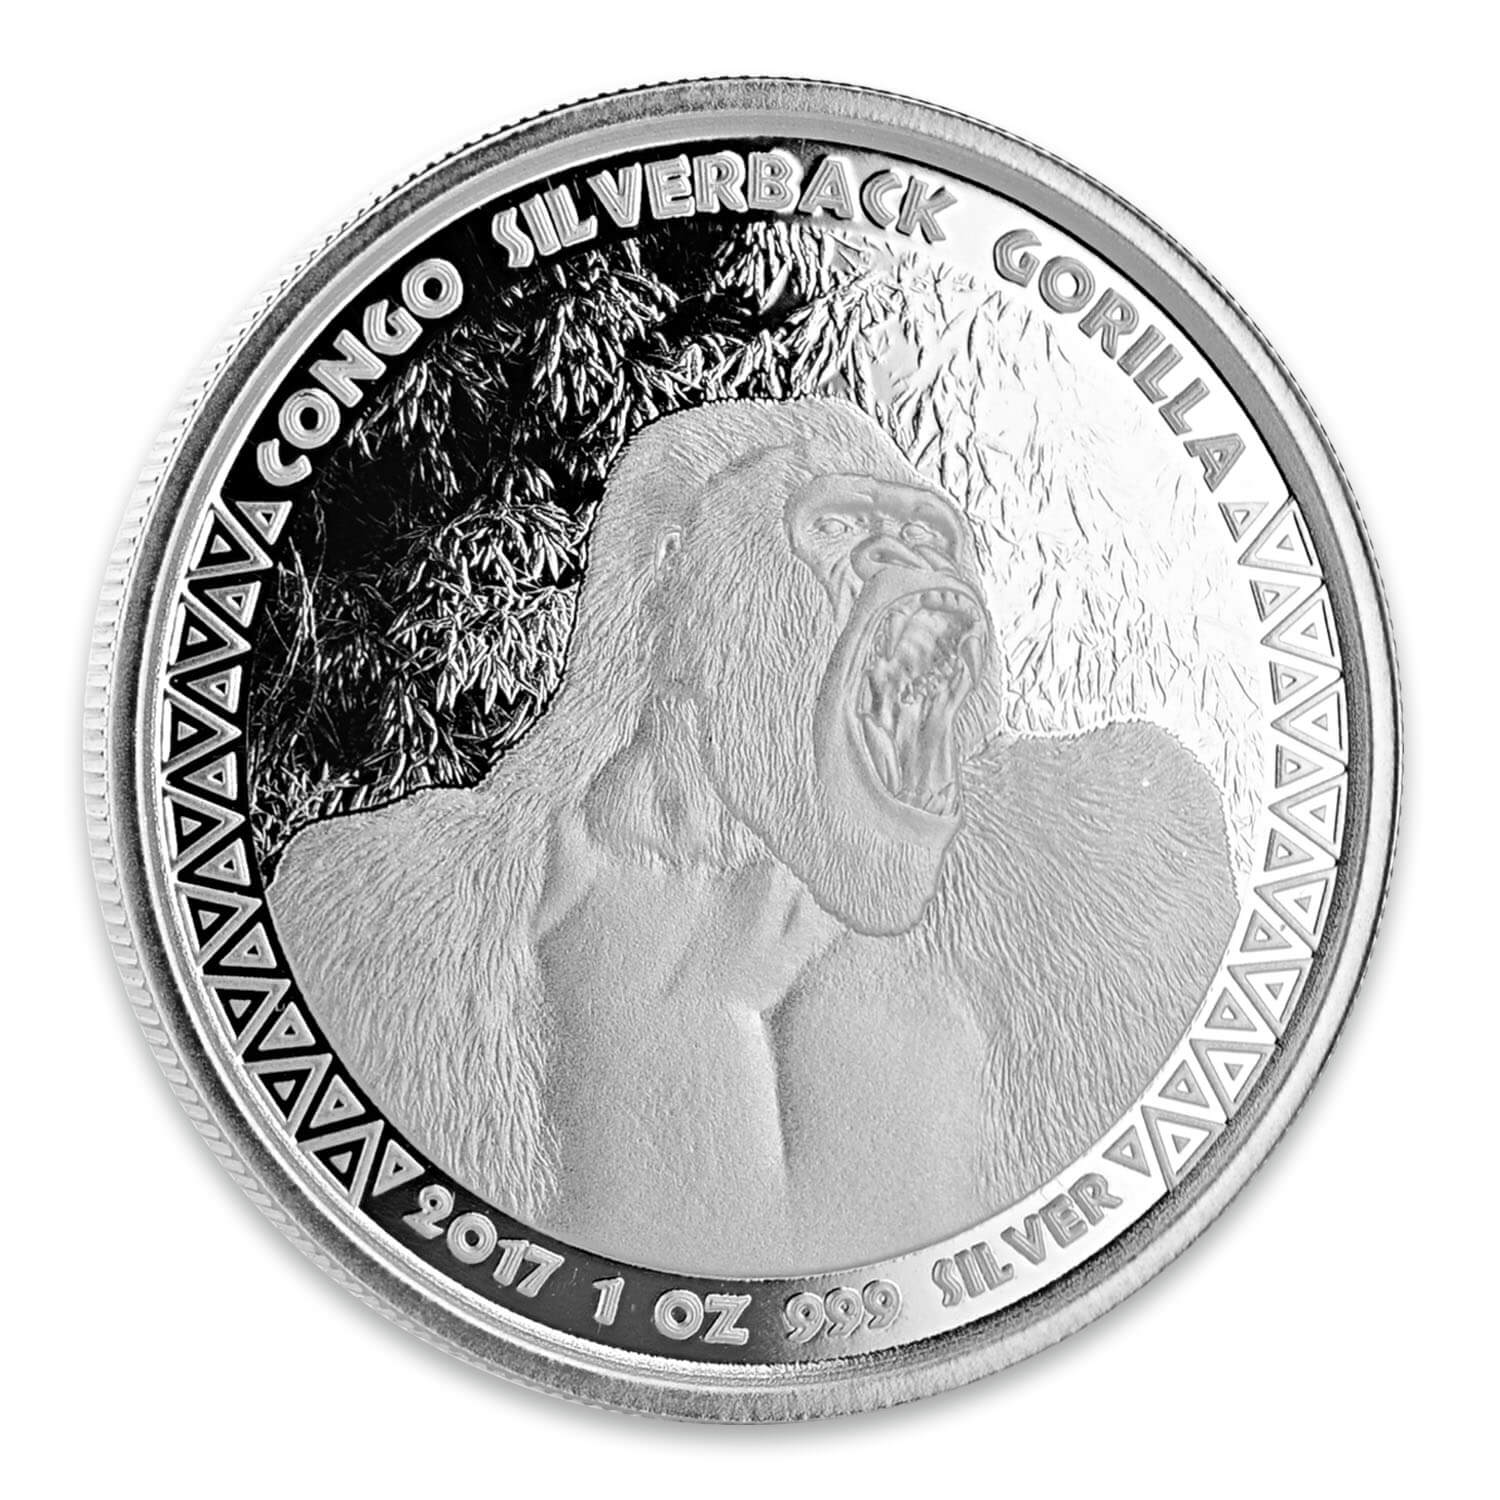 2017 Congo Silverback Gorilla 1 Oz Silver Coins In Tube